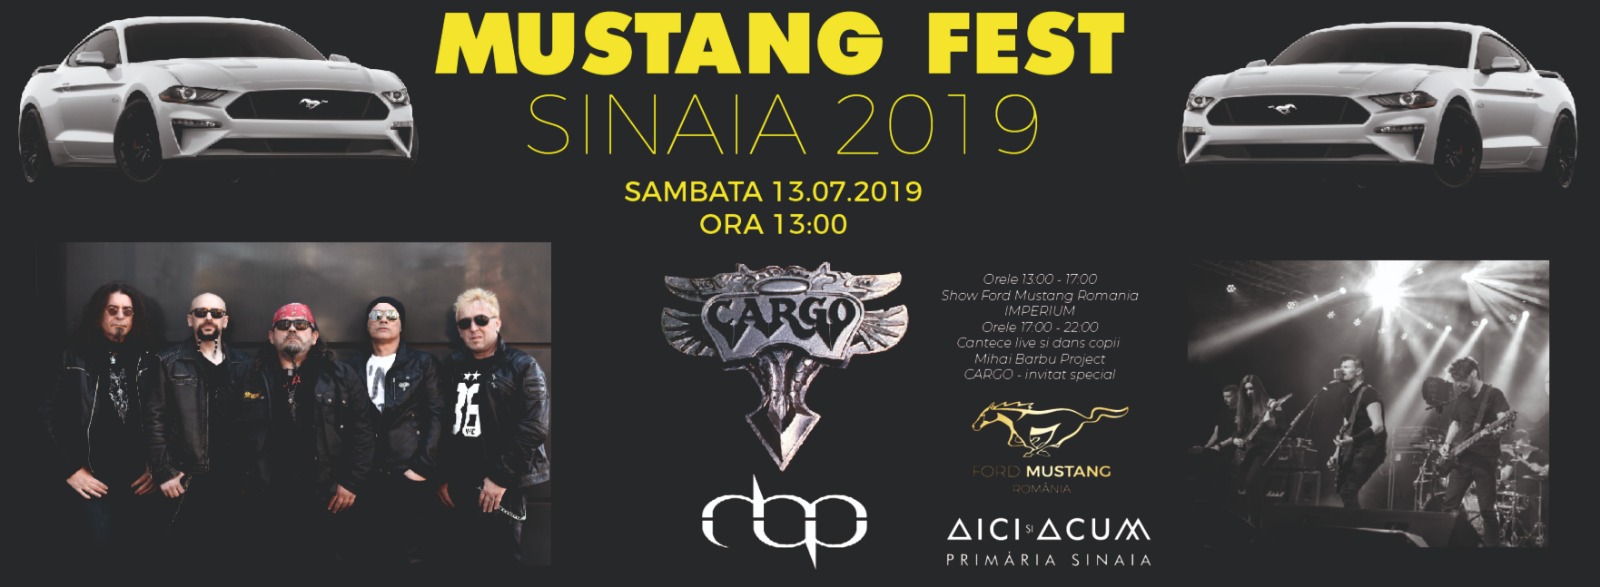 Mustang Fest 2019 – Program